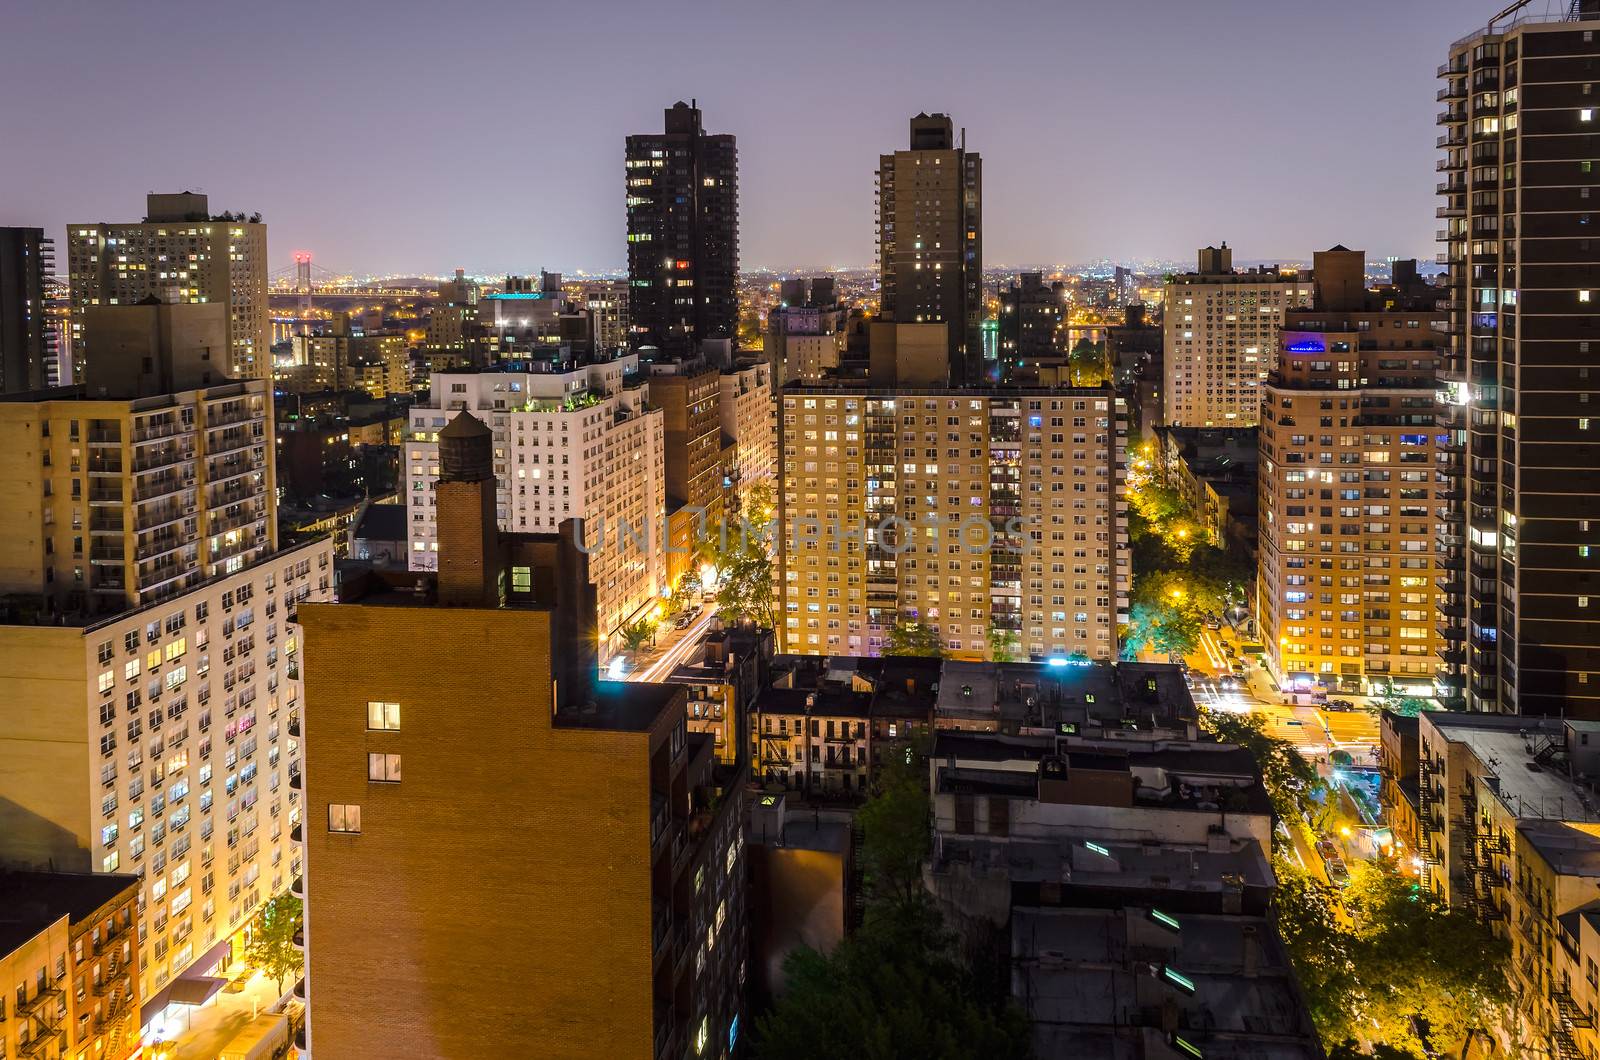 Aerial View at Night, New York City by marcorubino